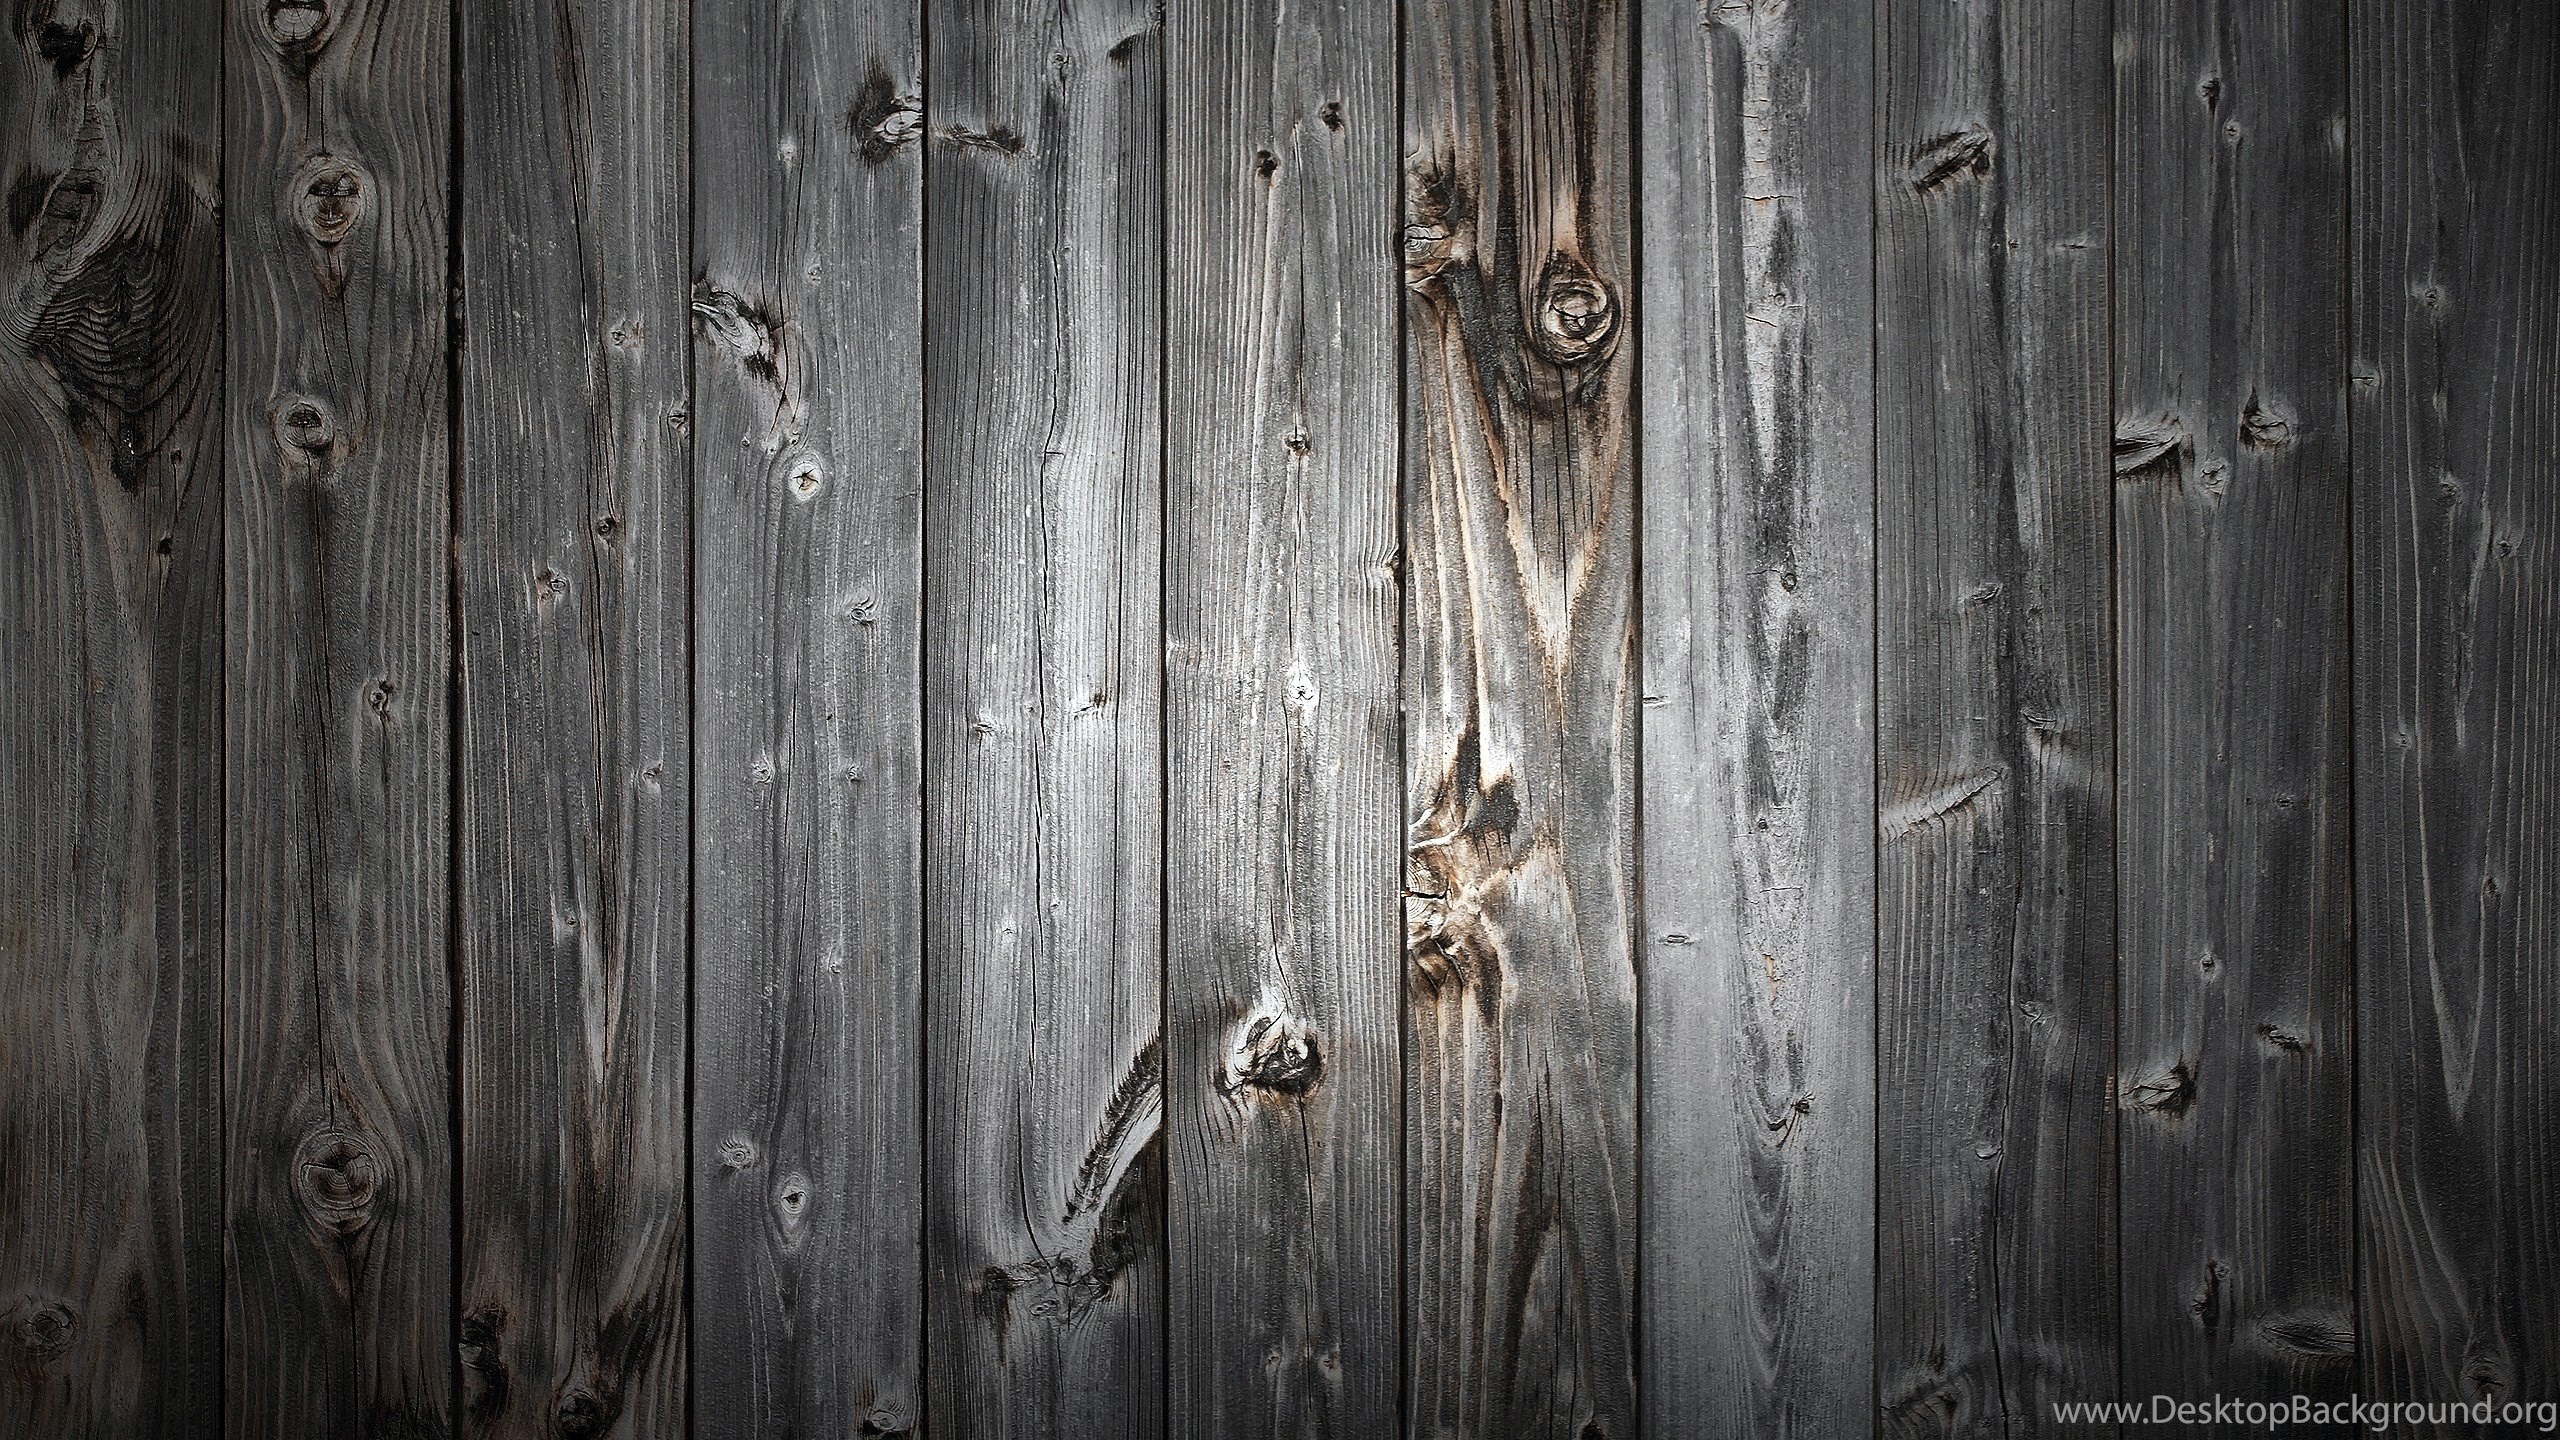 holz wallpaper,wood,plank,wall,hardwood,door